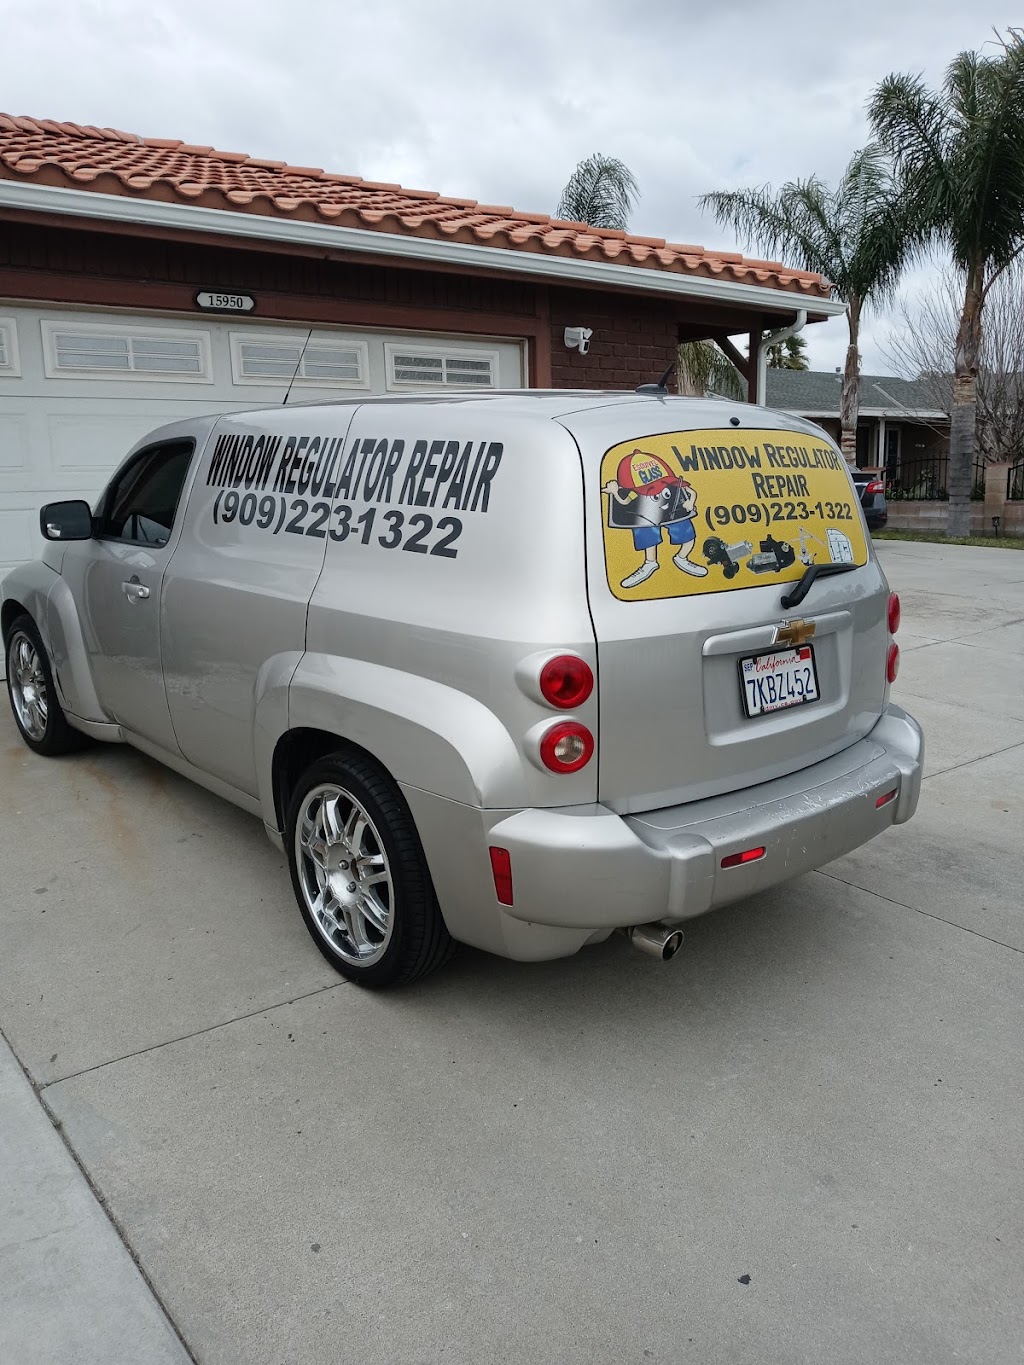 Esquivel car window regulator repair | 15950 Athol St, Fontana, CA 92335, USA | Phone: (909) 223-1322